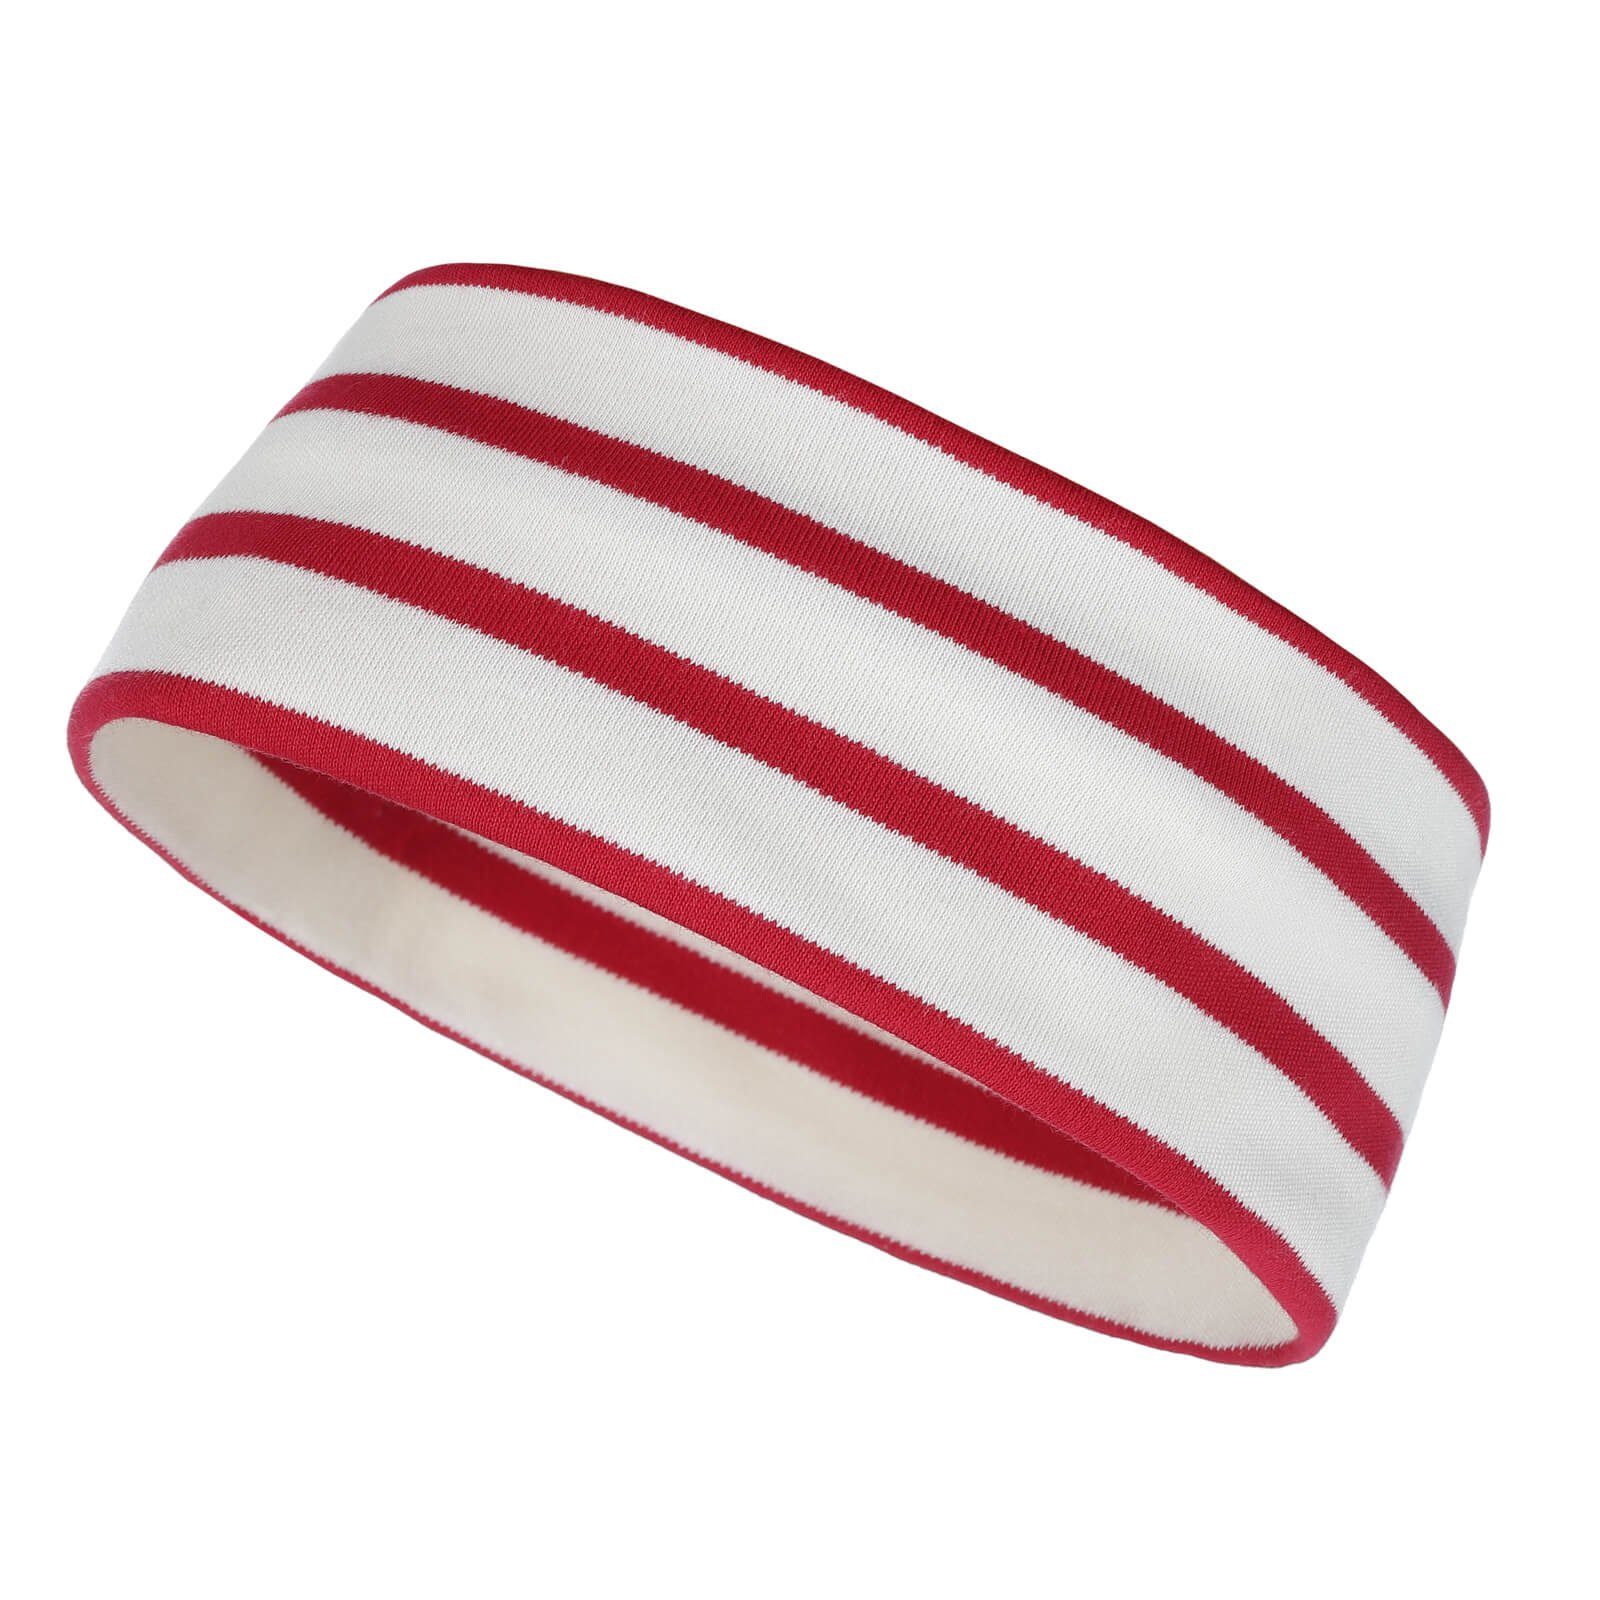 [Die neuesten Artikel im Ausland kaufen] modAS Stirnband Unisex Kopfband Baumwolle Maritim (23) rot und Erwachsene natur / für Kinder zweilagig